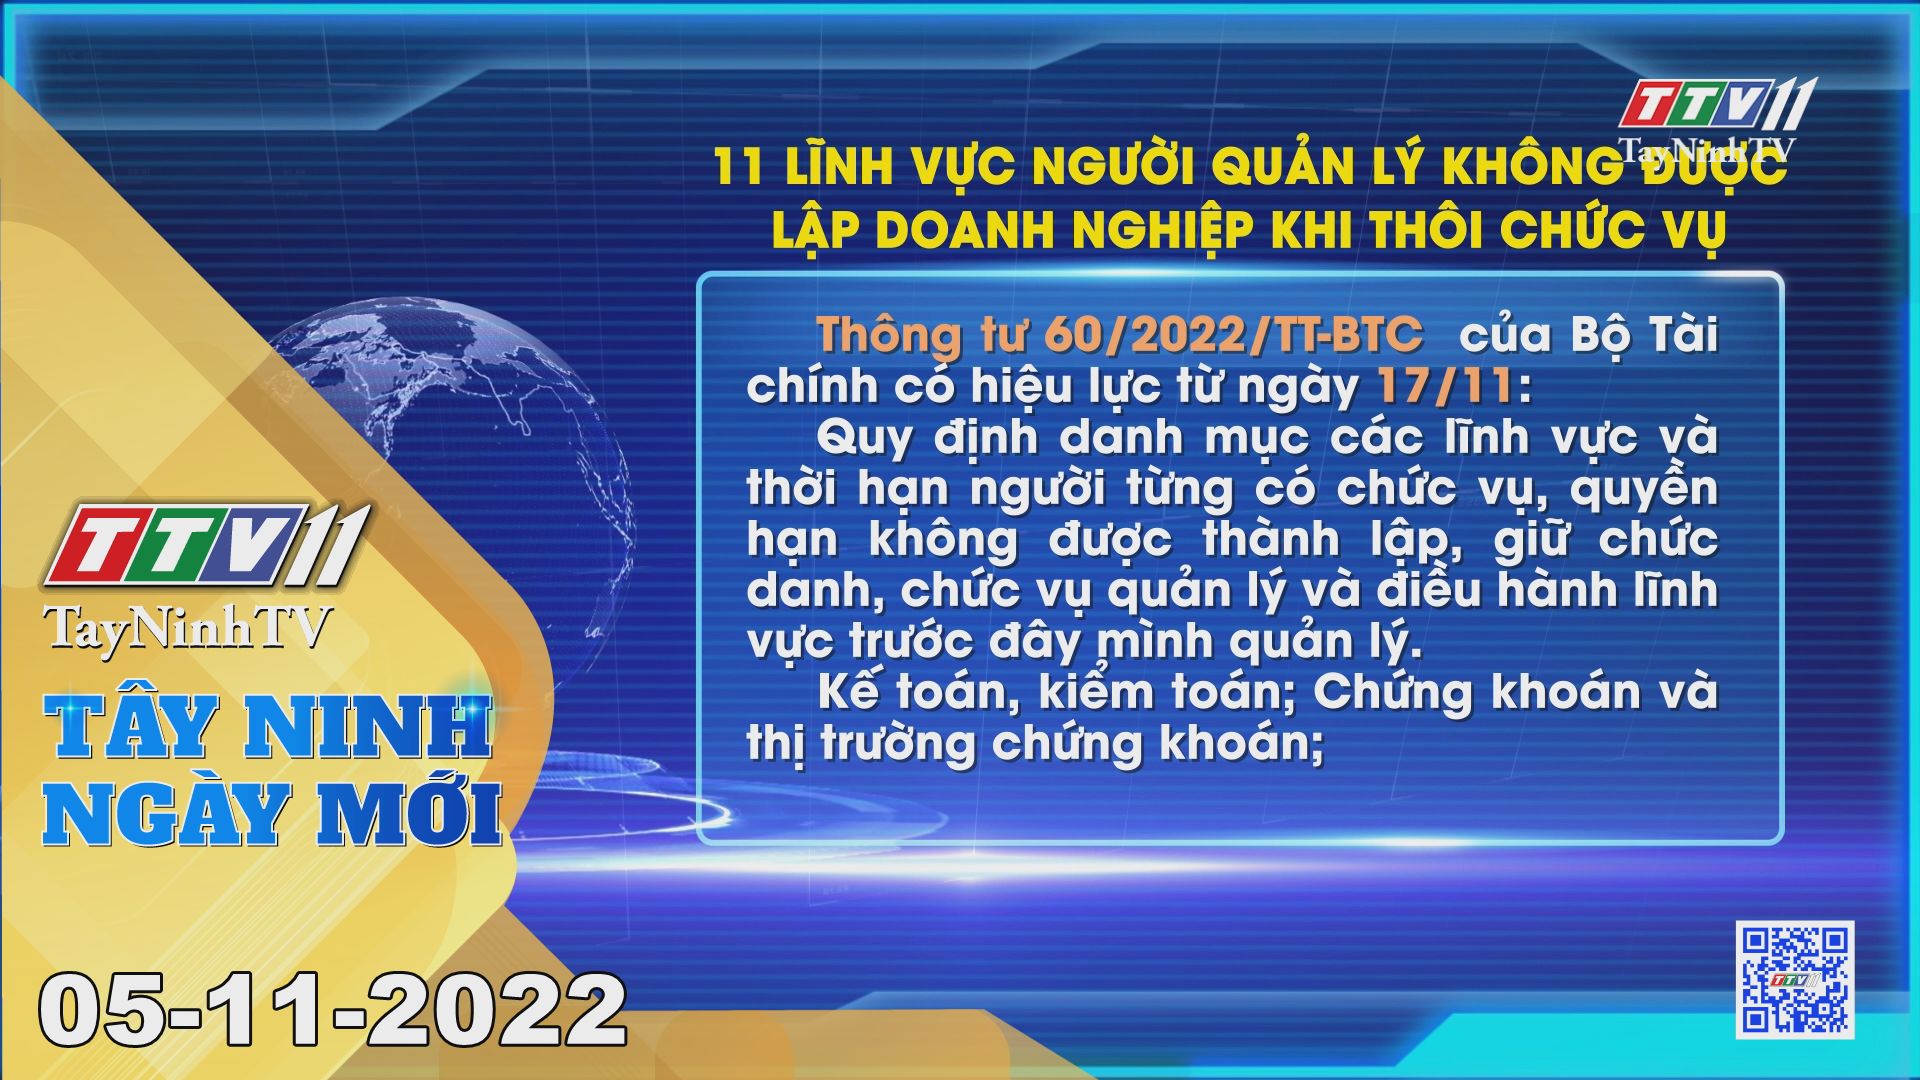 Tây Ninh ngày mới 05-11-2022 | Tin tức hôm nay | TayNinhTV